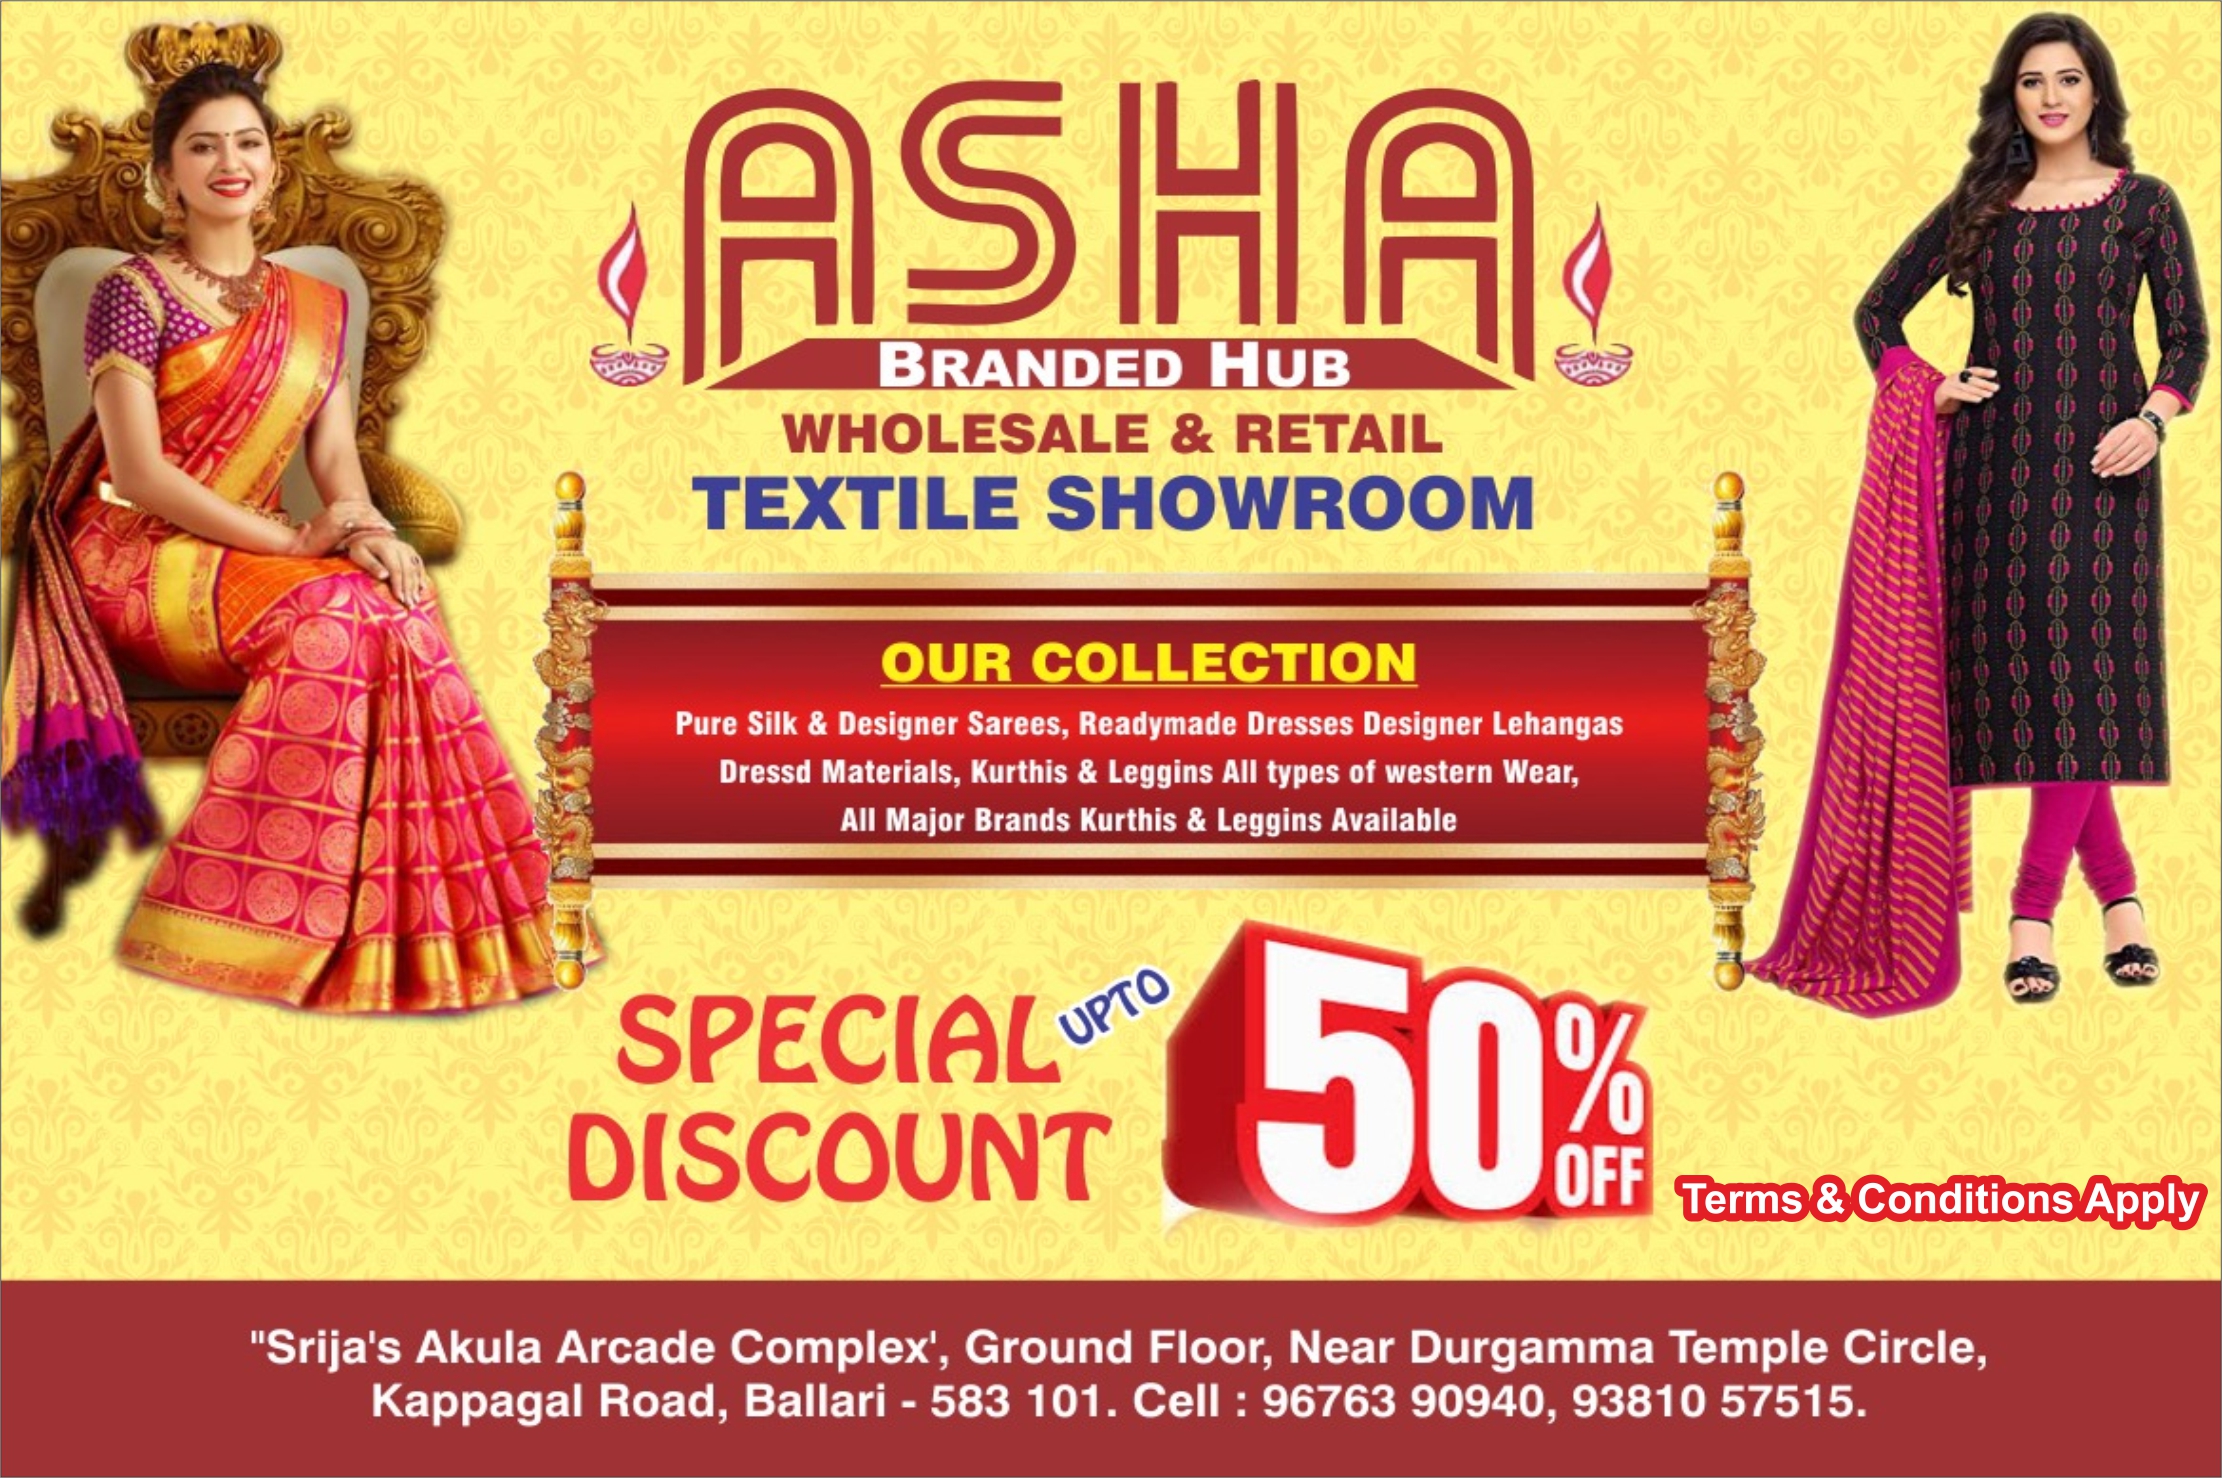 Asha Branded Hub